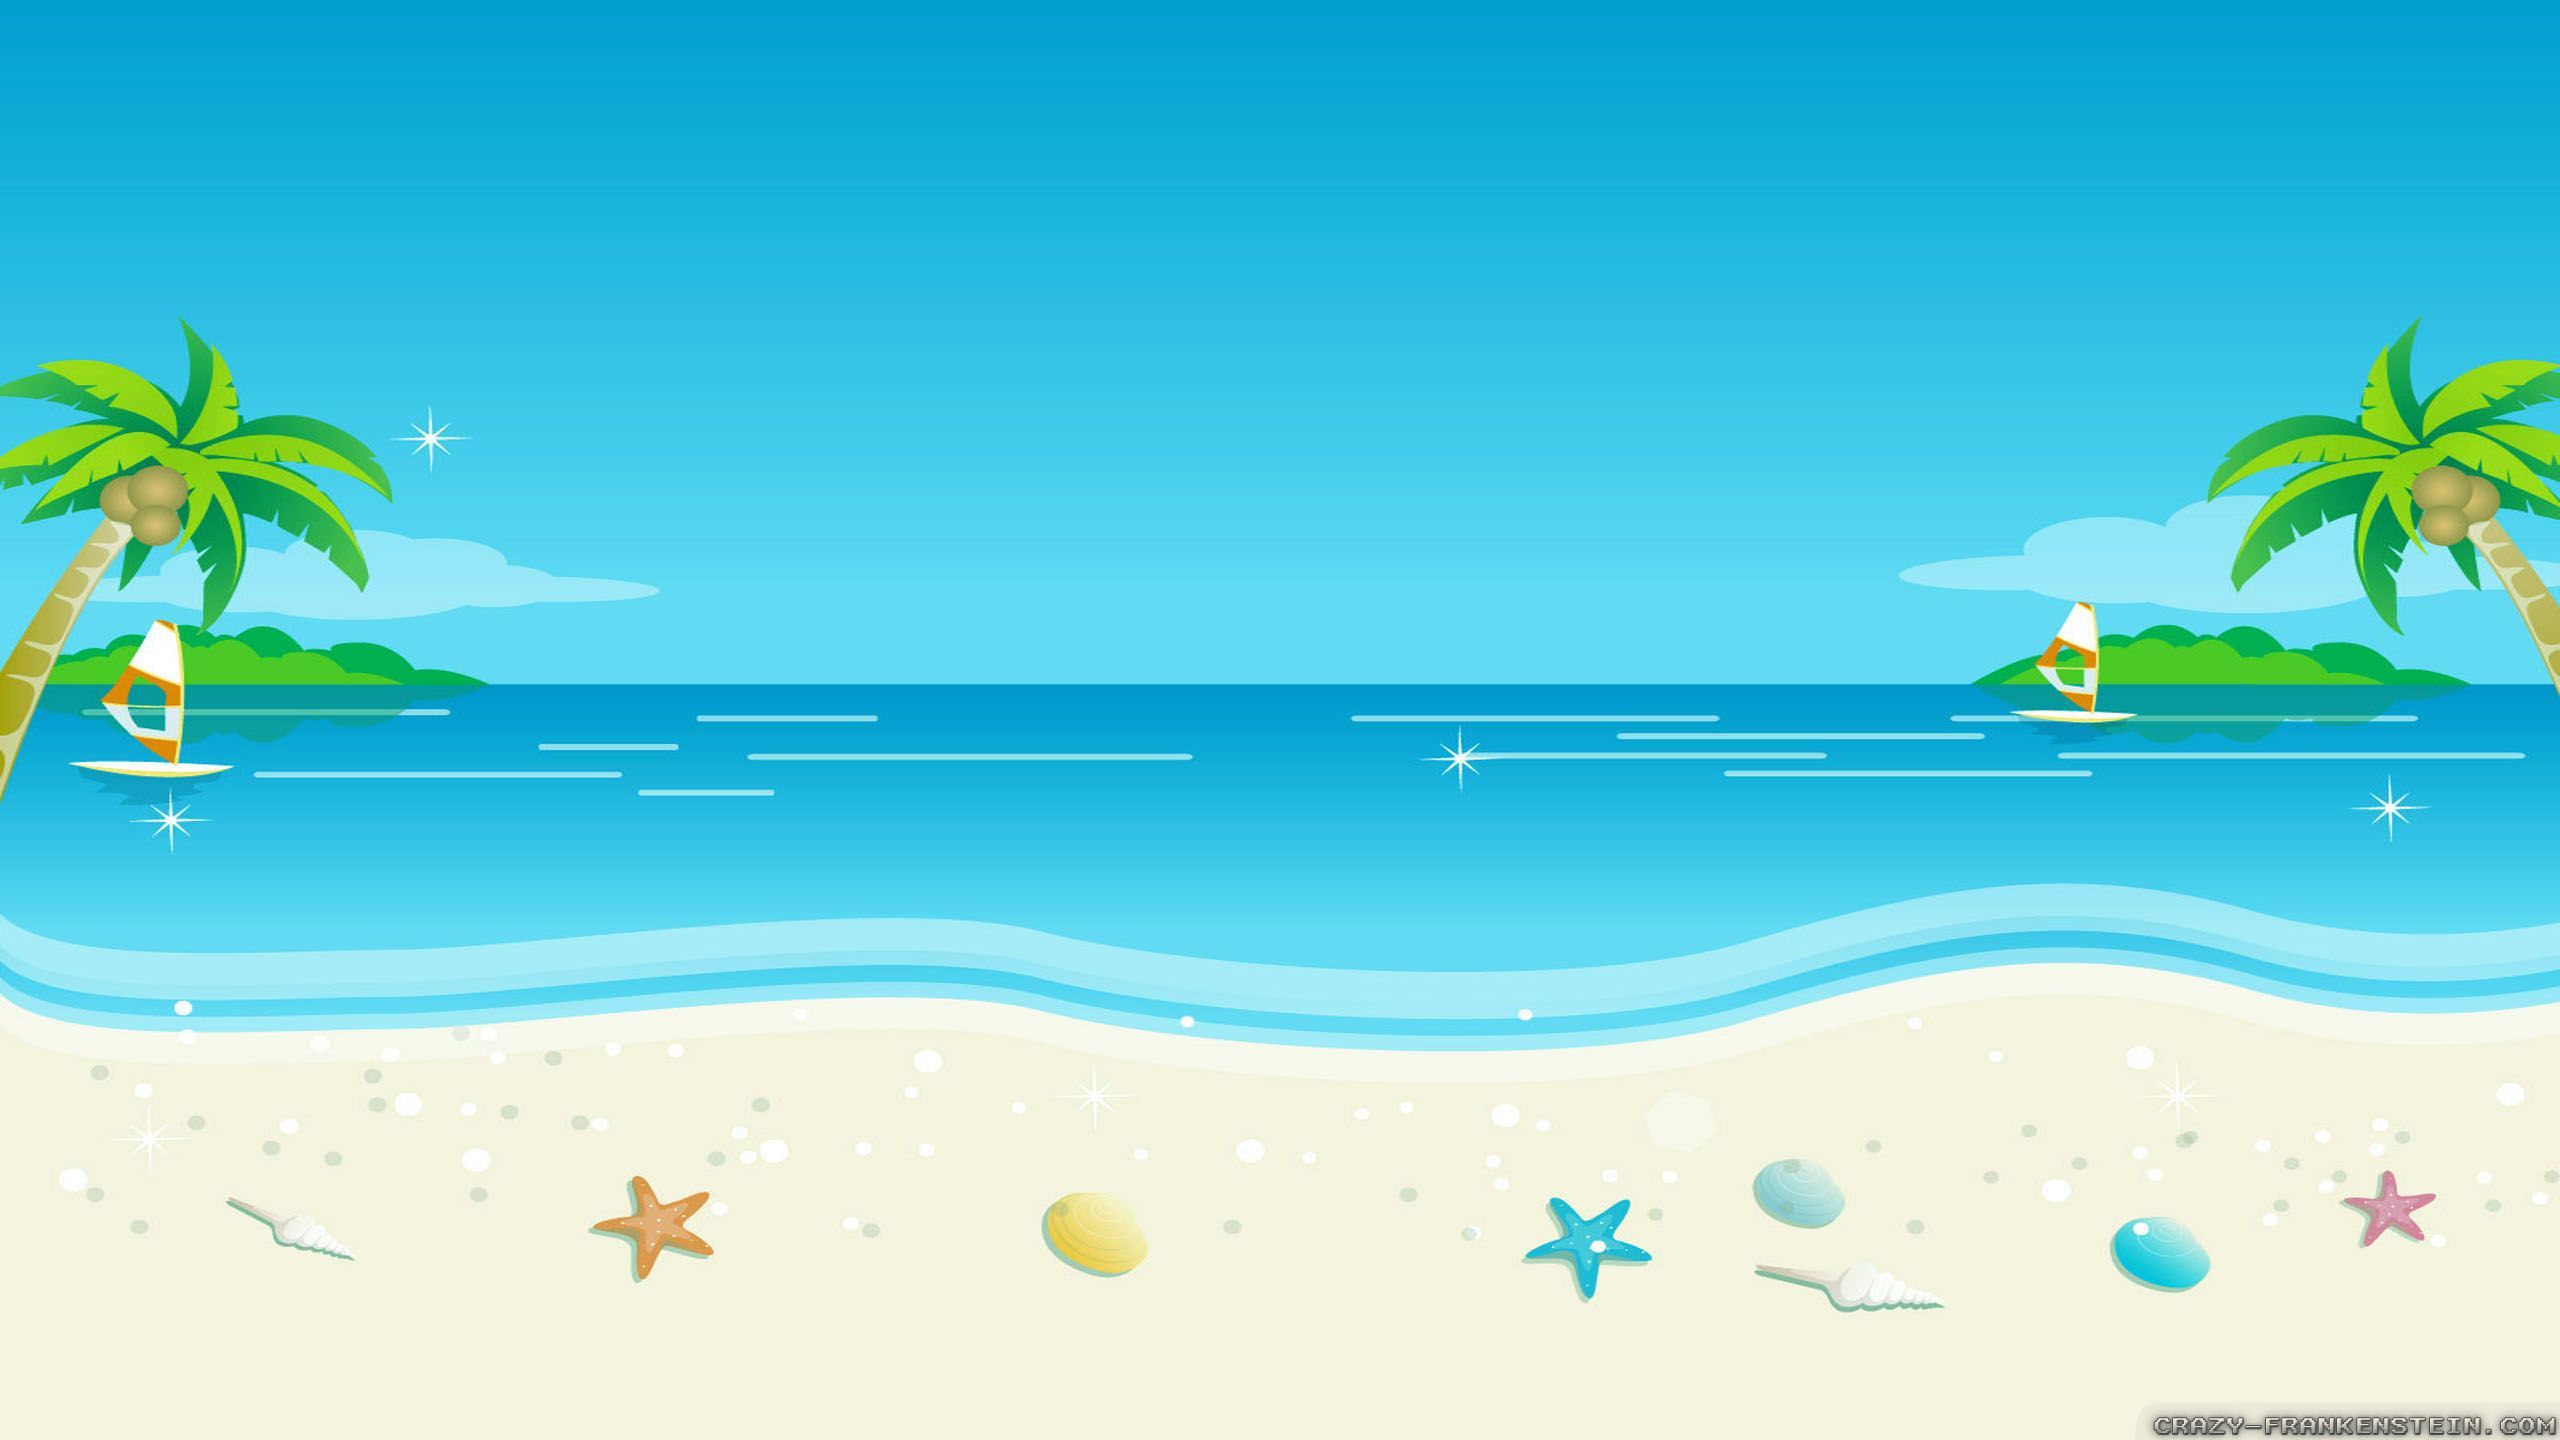 11 cute vector cartoon beach images summer beach cartoon on beach cartoon wallpapers